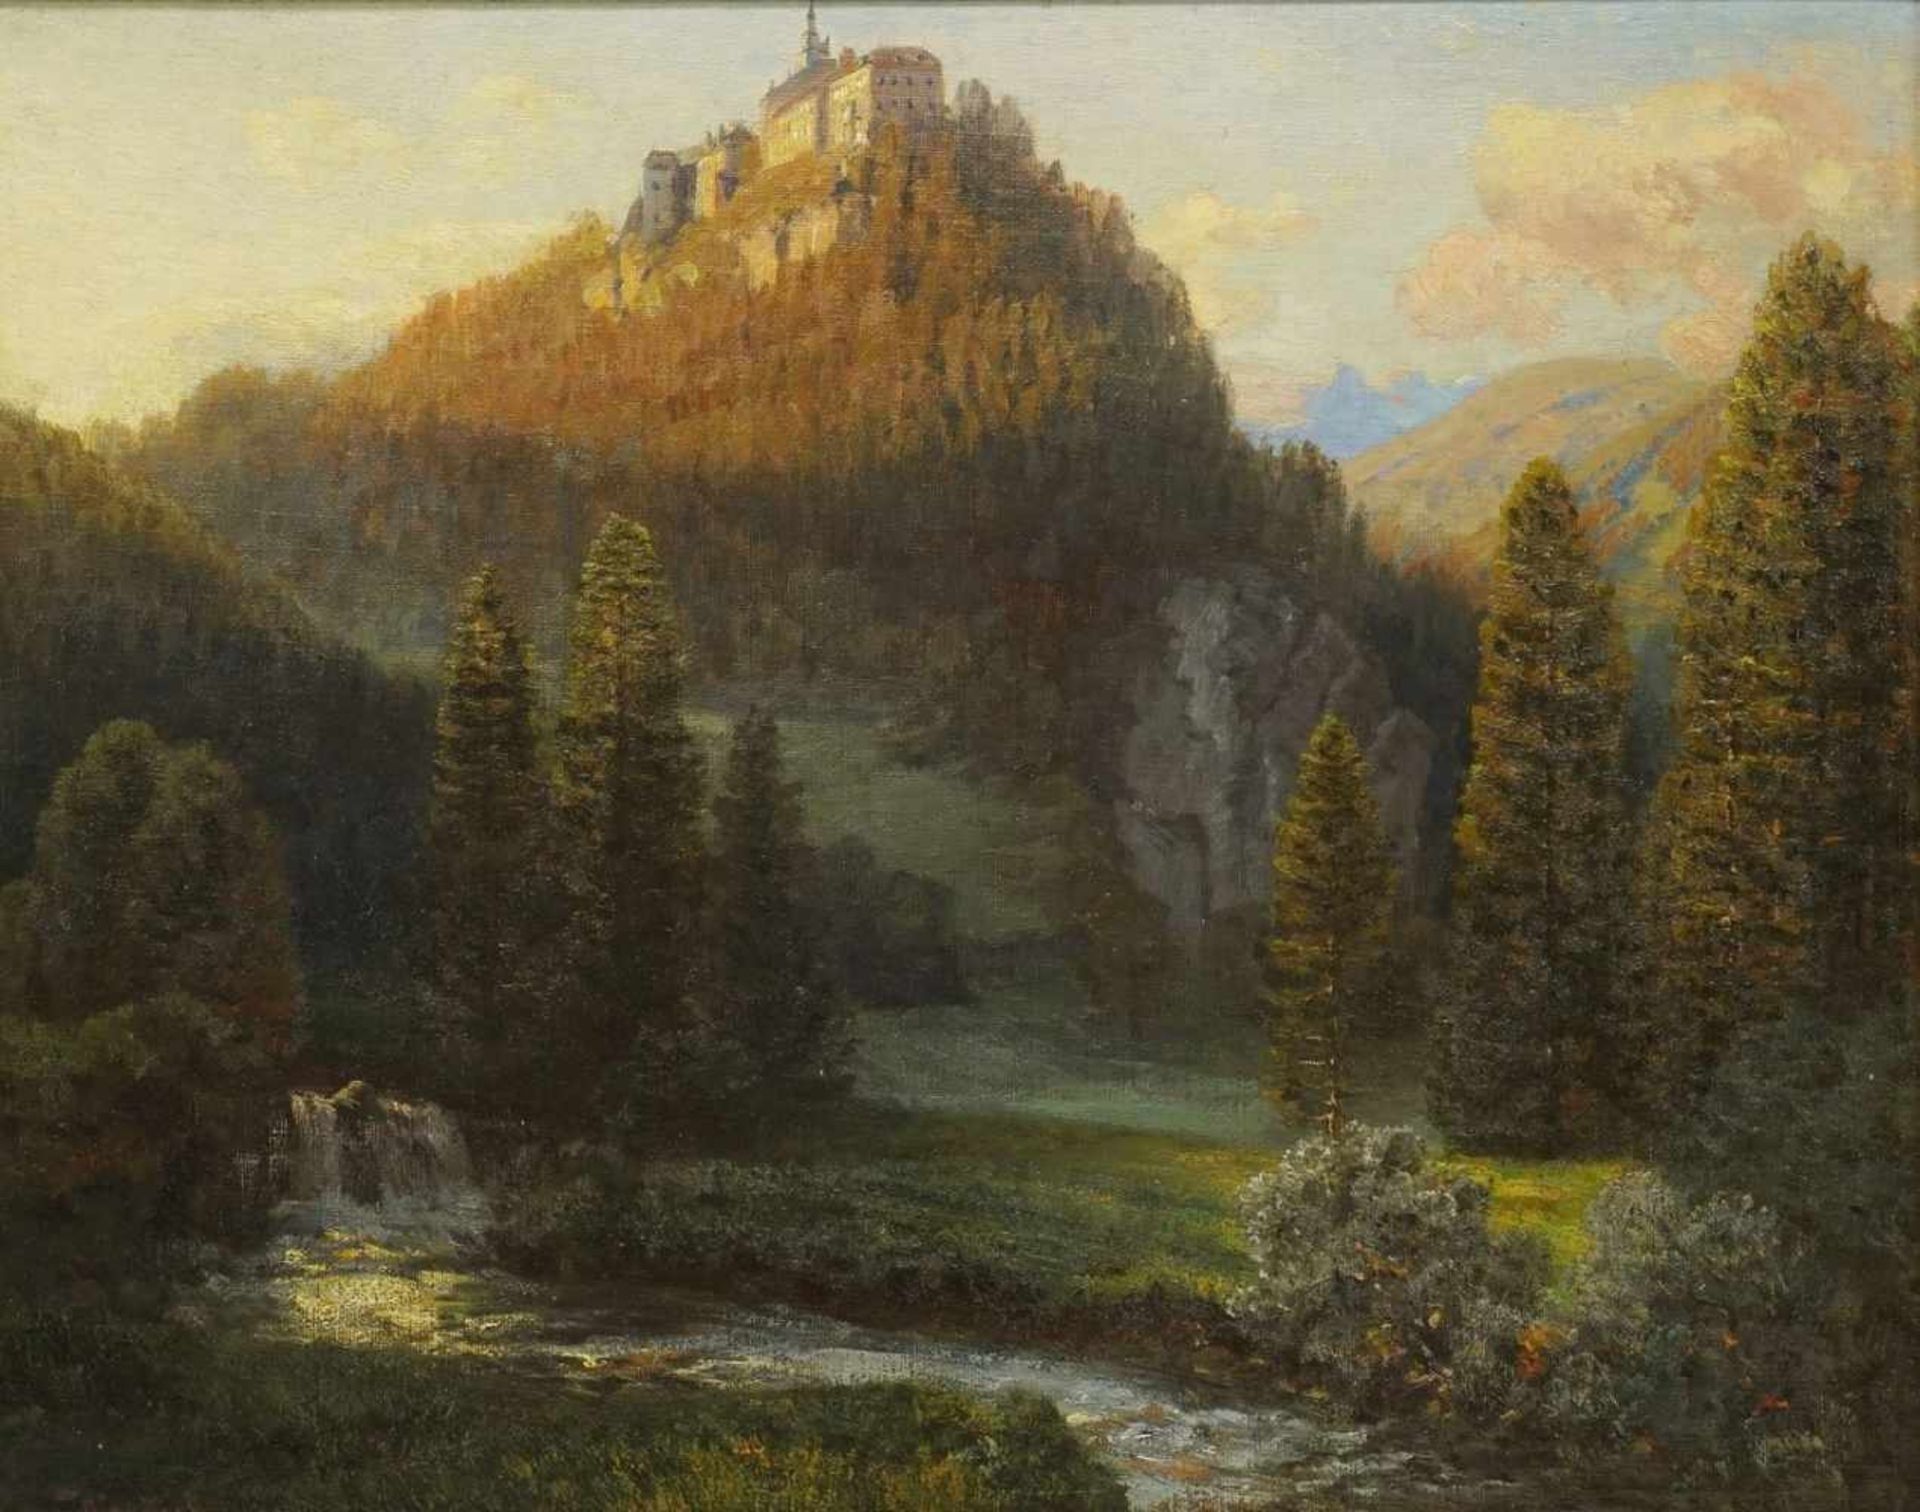 Anton Hlavacek, "Burg Aggstein in der Wachau"Mitglied des Wiener Künstlerhauses (Wien 1842 - Wien